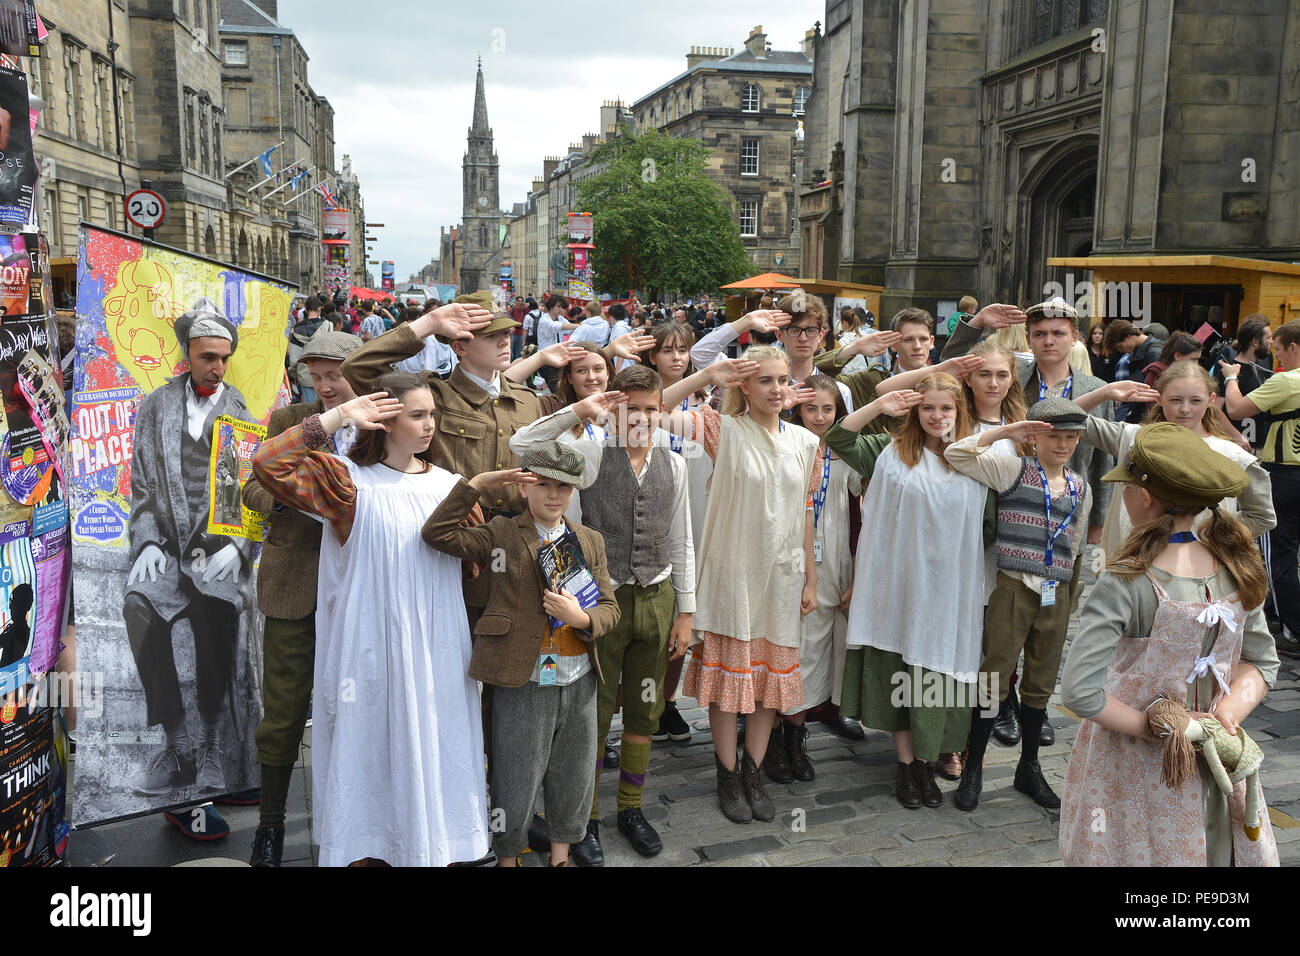 Les artistes interprètes ou exécutants sur le Royal Mile, dans la vieille ville d'Édimbourg promouvoir leur spectacle dans le cadre de l'Assemblée Edinburgh Festival Fringe 2018 Banque D'Images